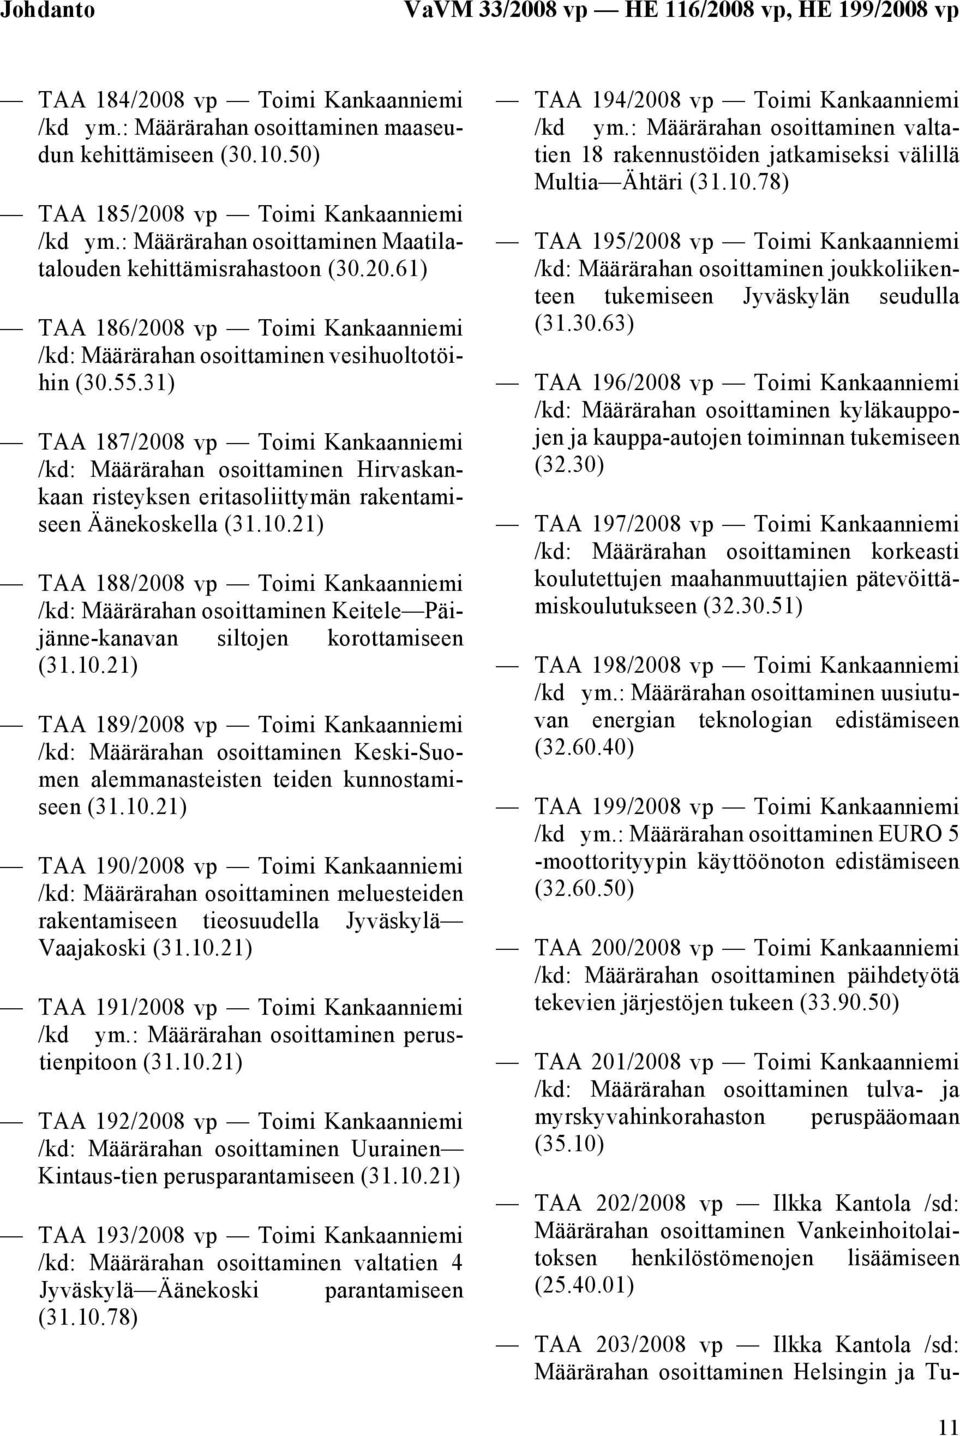 55.31) TAA 187/2008 vp Toimi Kankaanniemi /kd: Määrärahan osoittaminen Hirvaskankaan risteyksen eritasoliittymän rakentamiseen Äänekoskella TAA 188/2008 vp Toimi Kankaanniemi /kd: Määrärahan